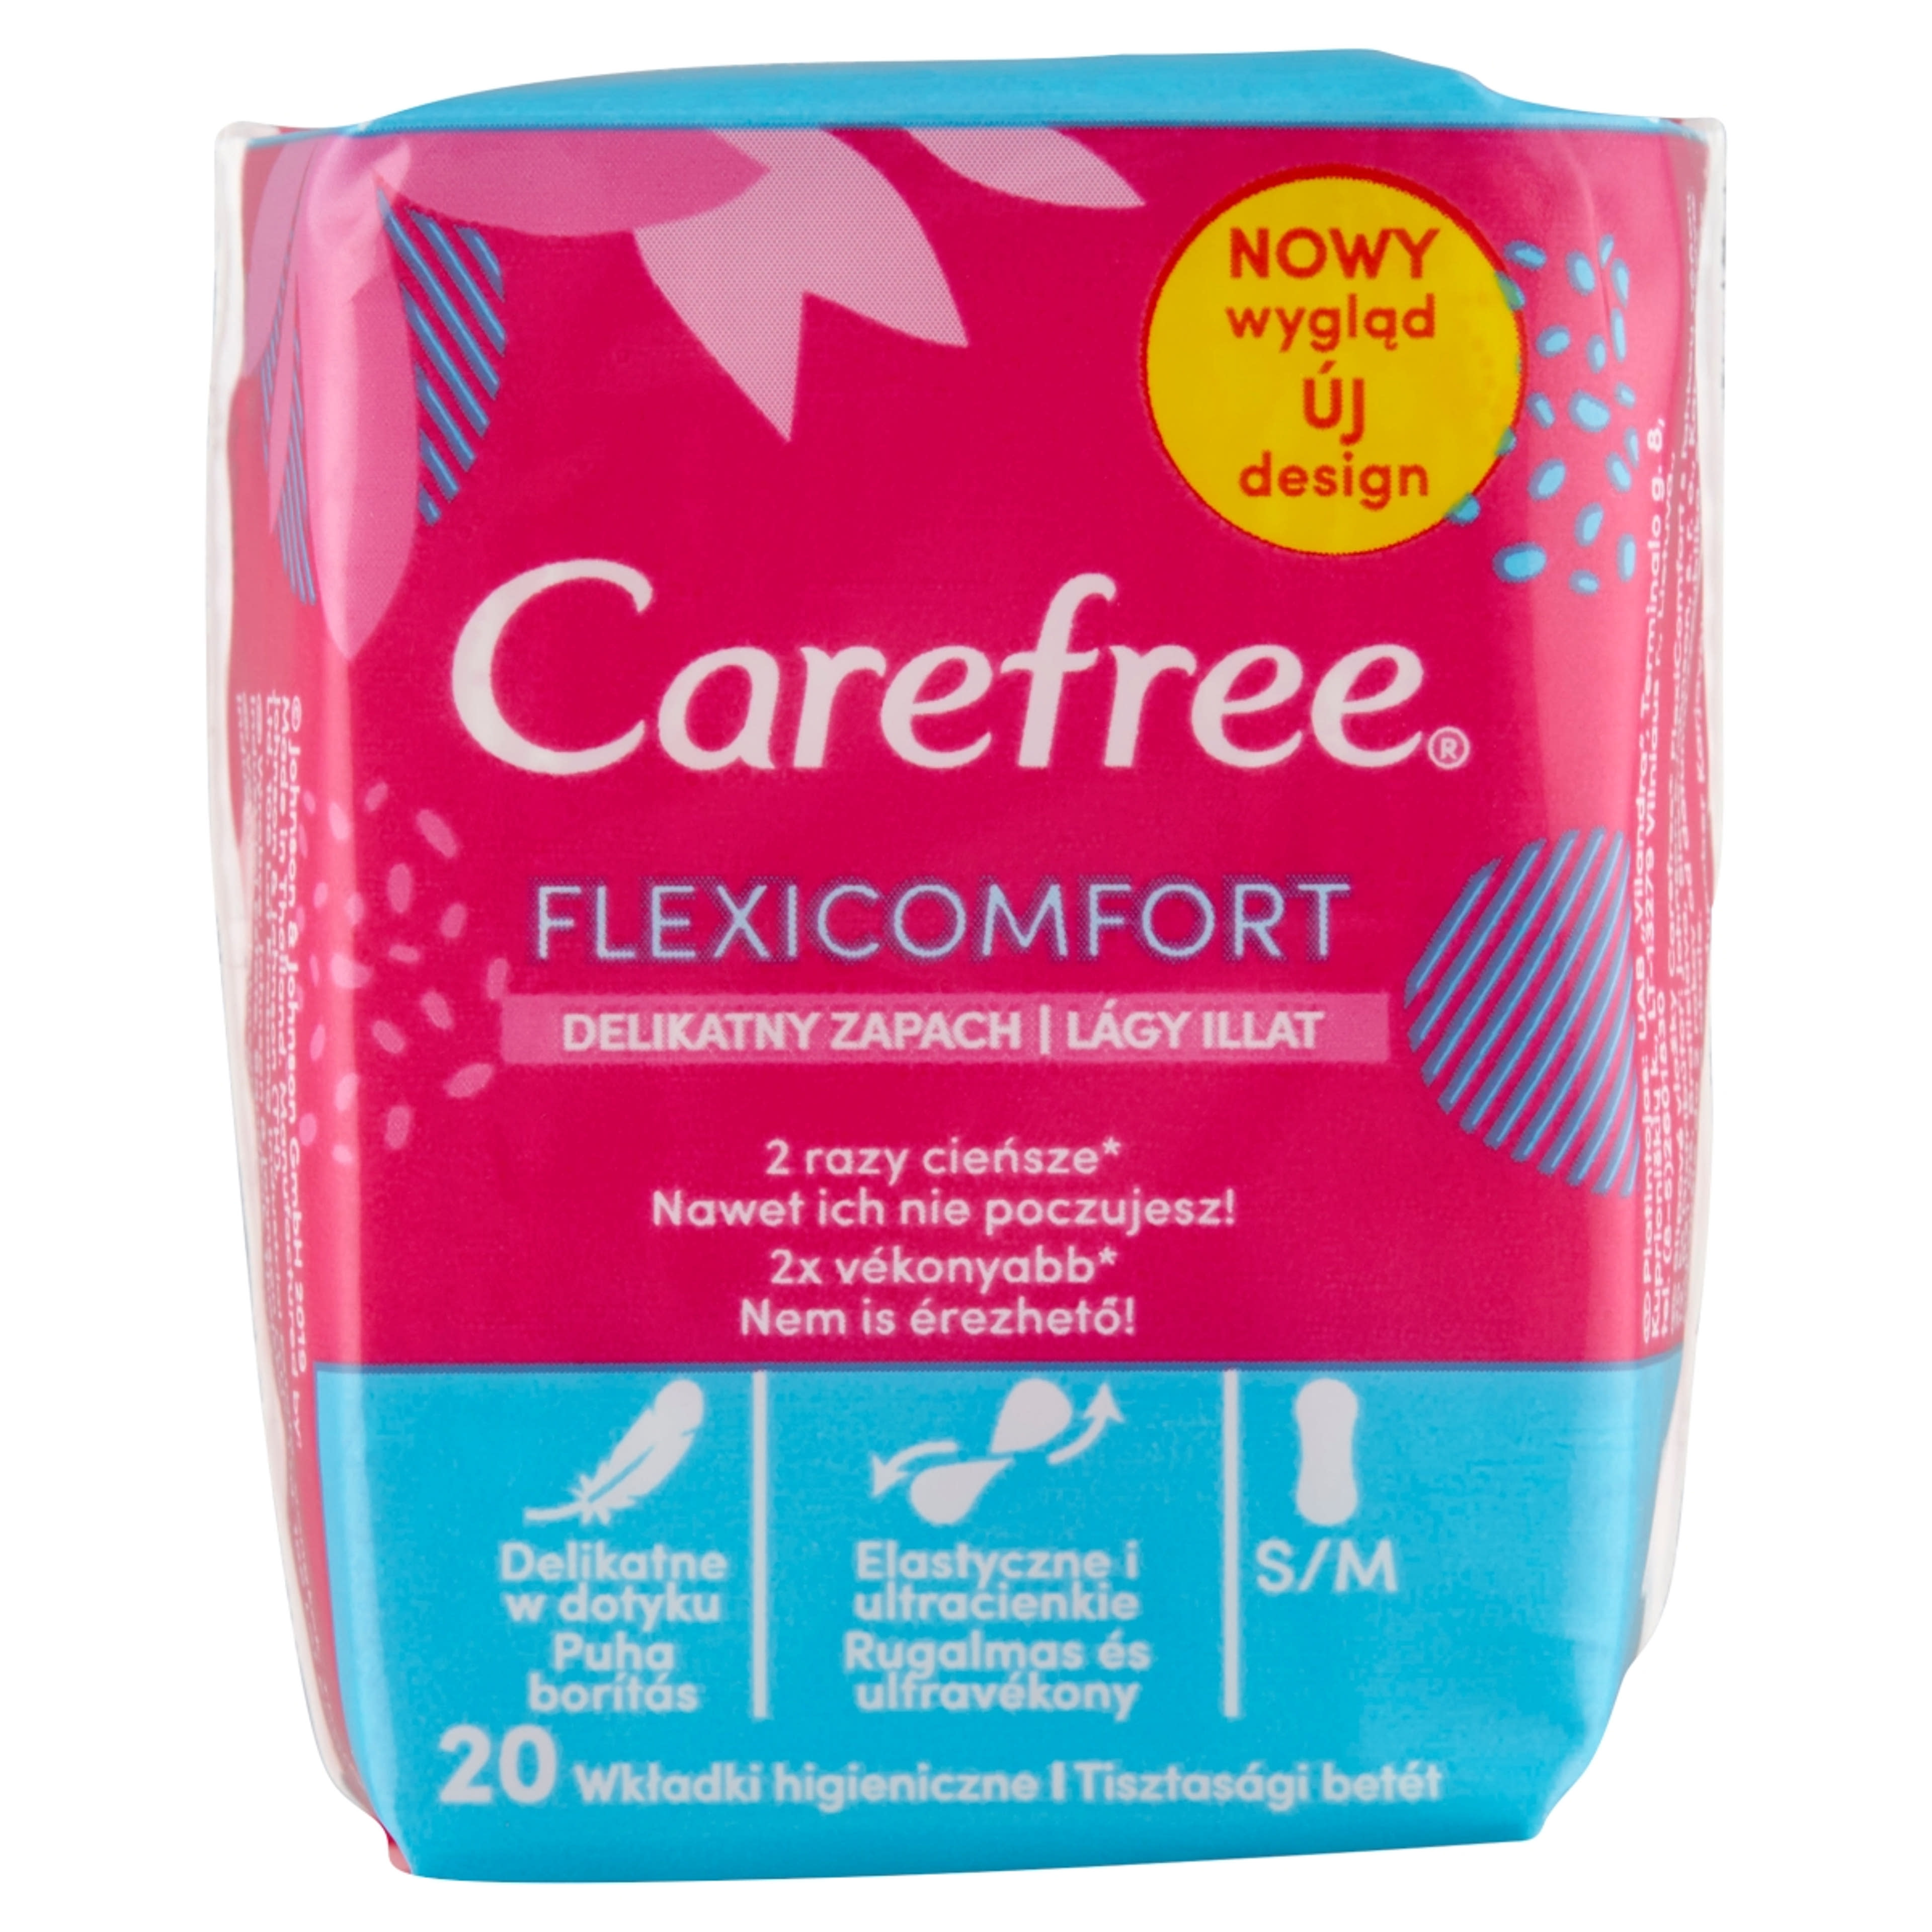 Carefree FlexiComfort tisztasági betét lágy illattal - 20 db